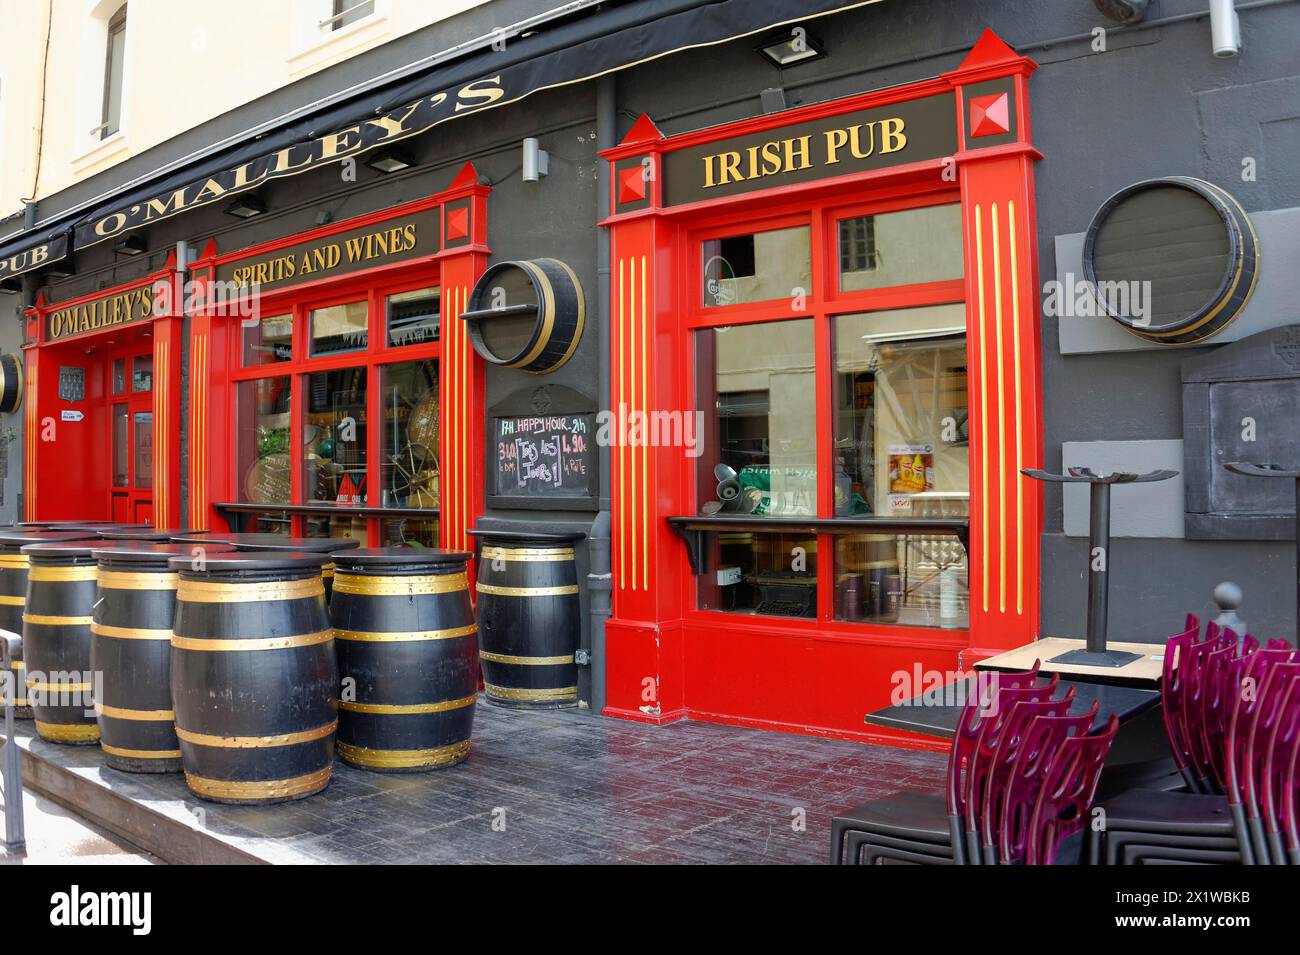 Marsiglia, invitante pub irlandese con cornici rosse delle finestre, botti come decorazione e sedie da caffè fornite, Marsiglia, Departement Bouches-du-Rhone Foto Stock